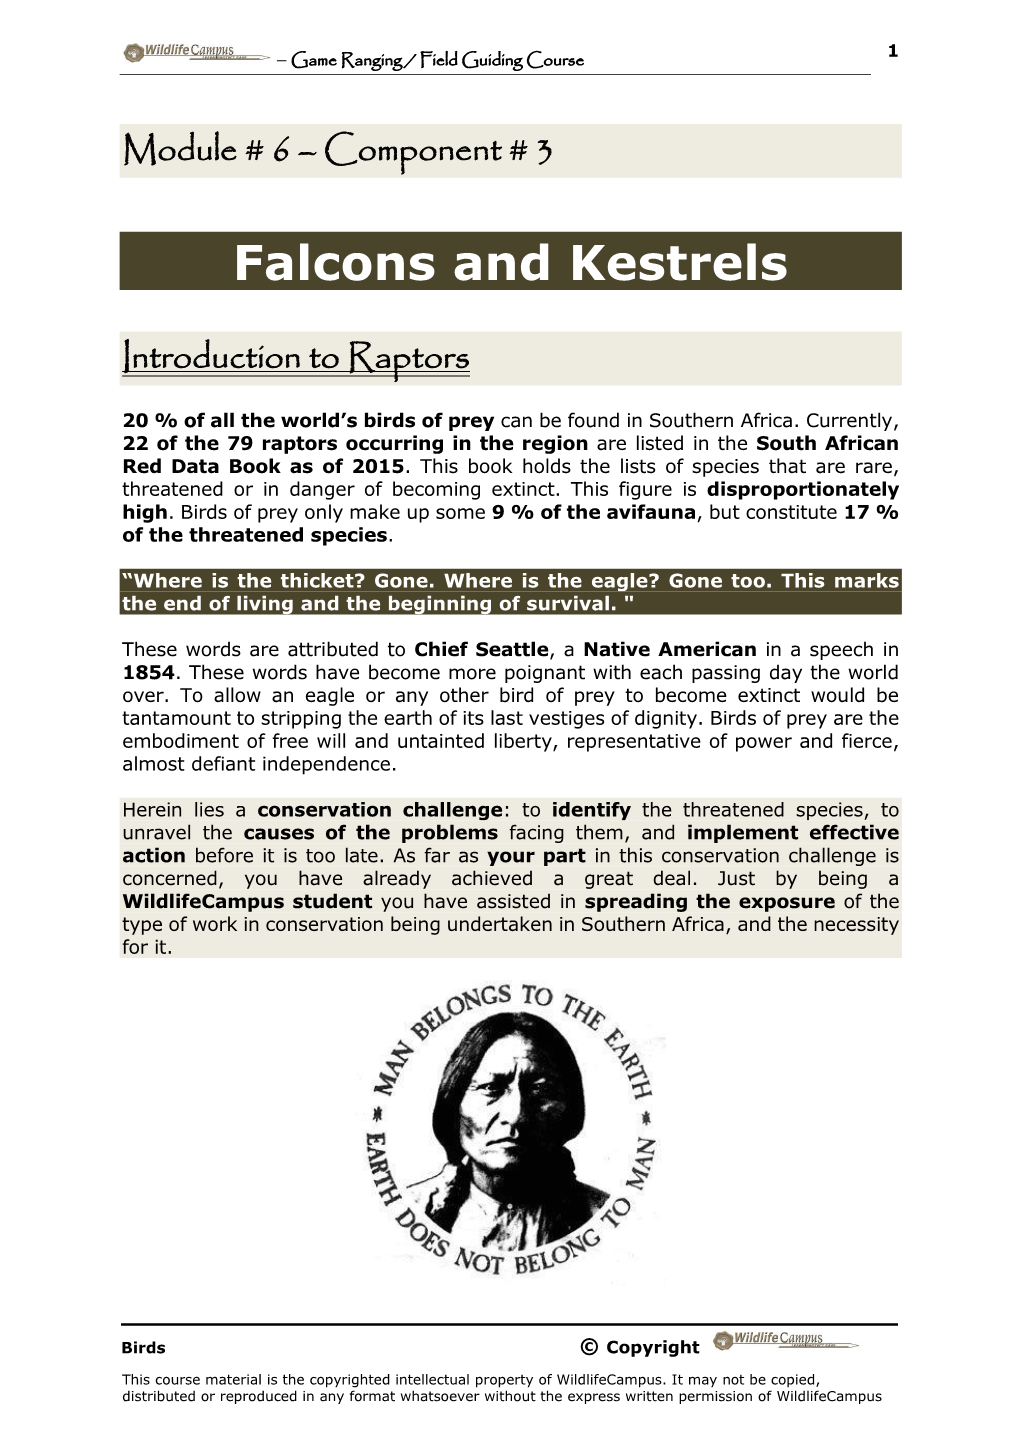 Falcons and Kestrels